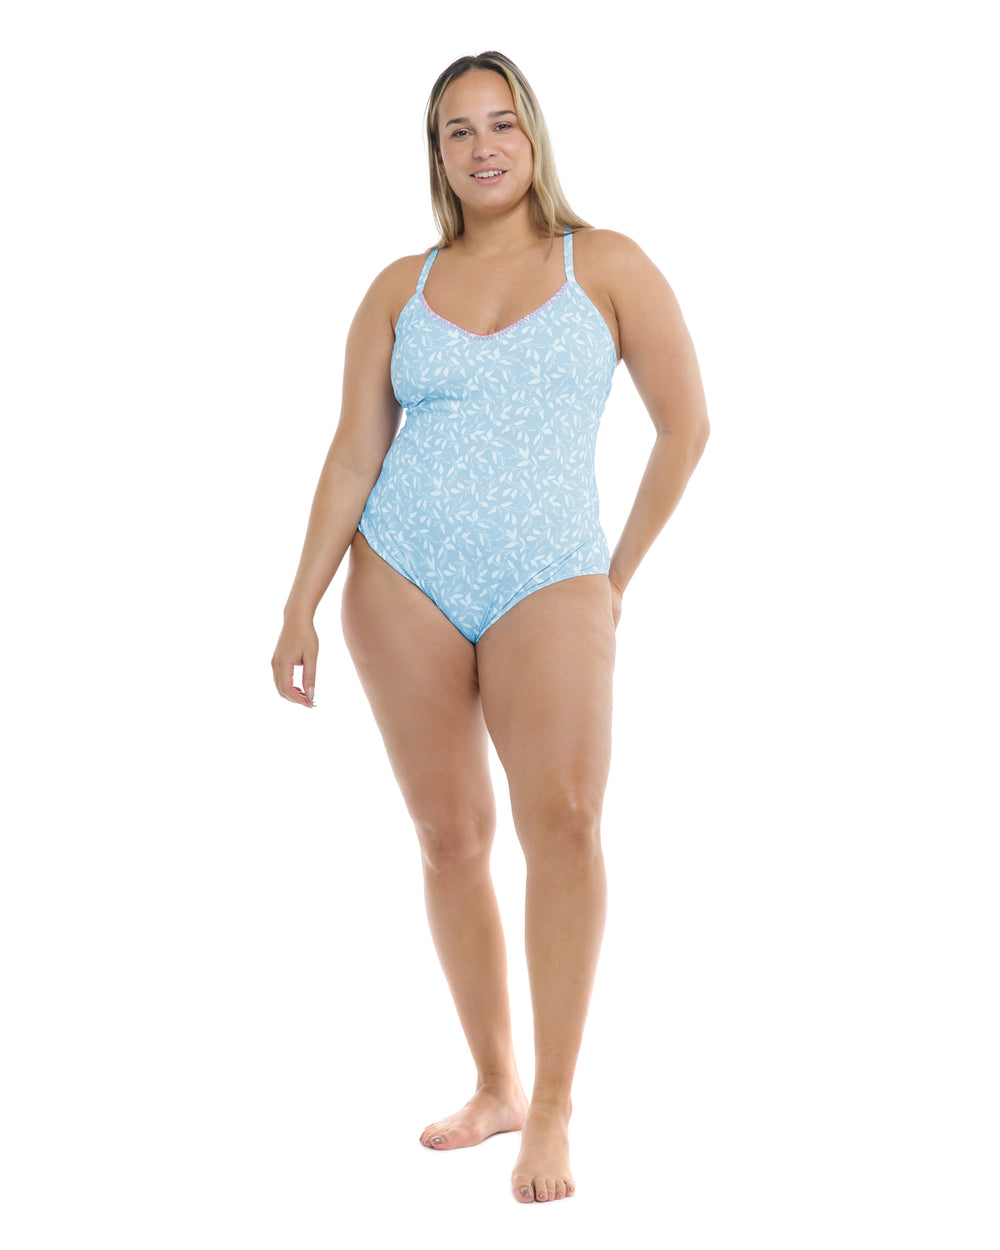 Flowery Skies Sandbar Plus Size One-Piece Swimsuit - Baby Blue - Body Glove